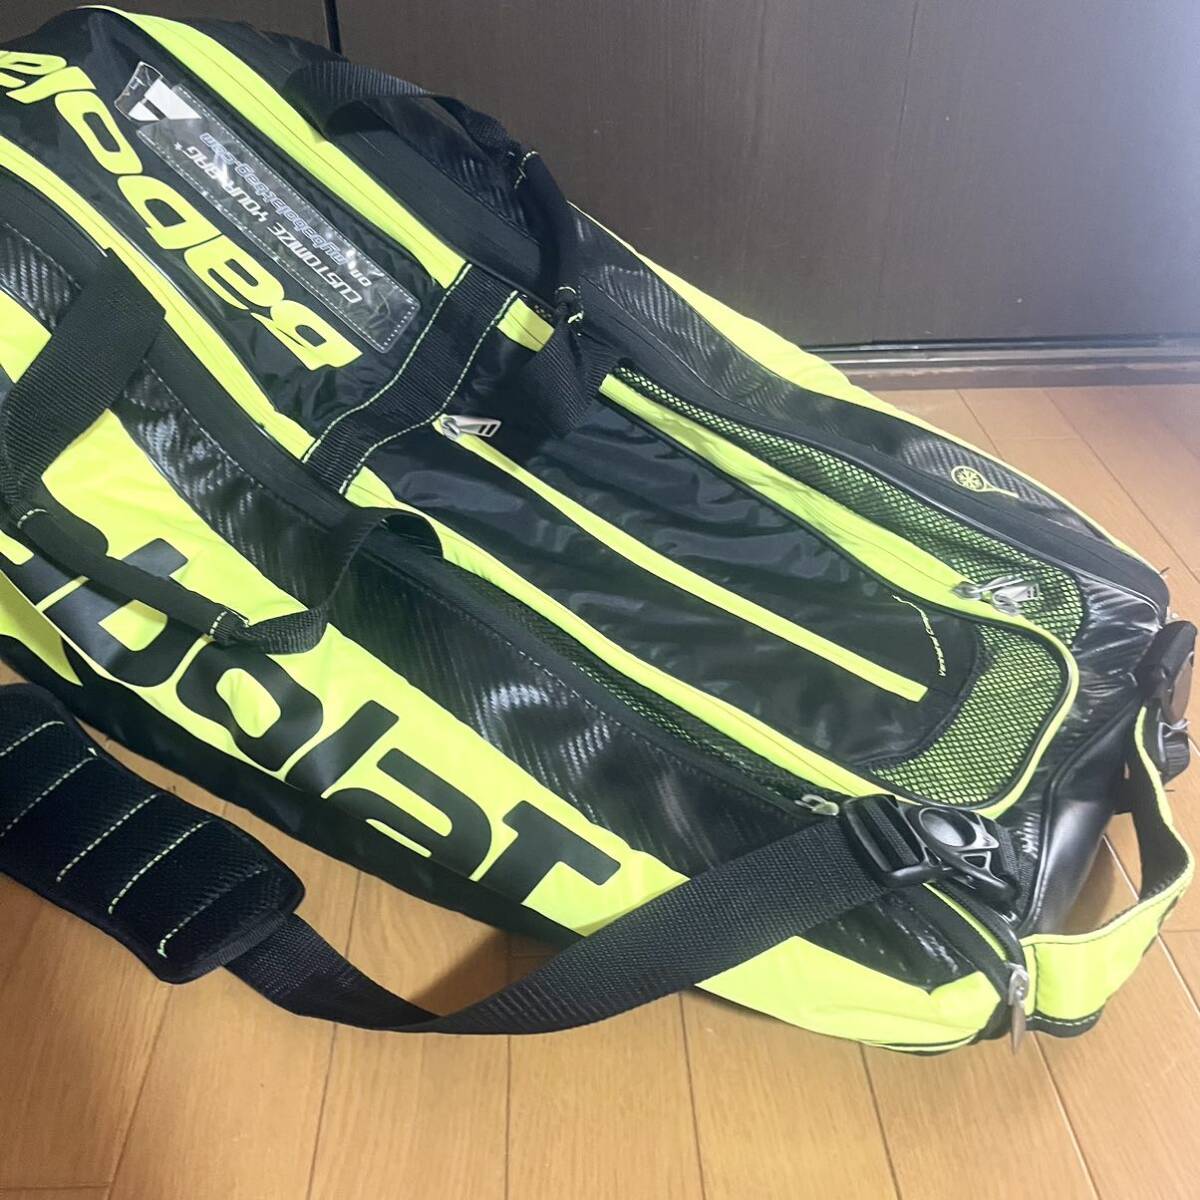 【Babolat】新品未使用ラケットバッグ バボラピュアアエロ(6本) テニスバッグ